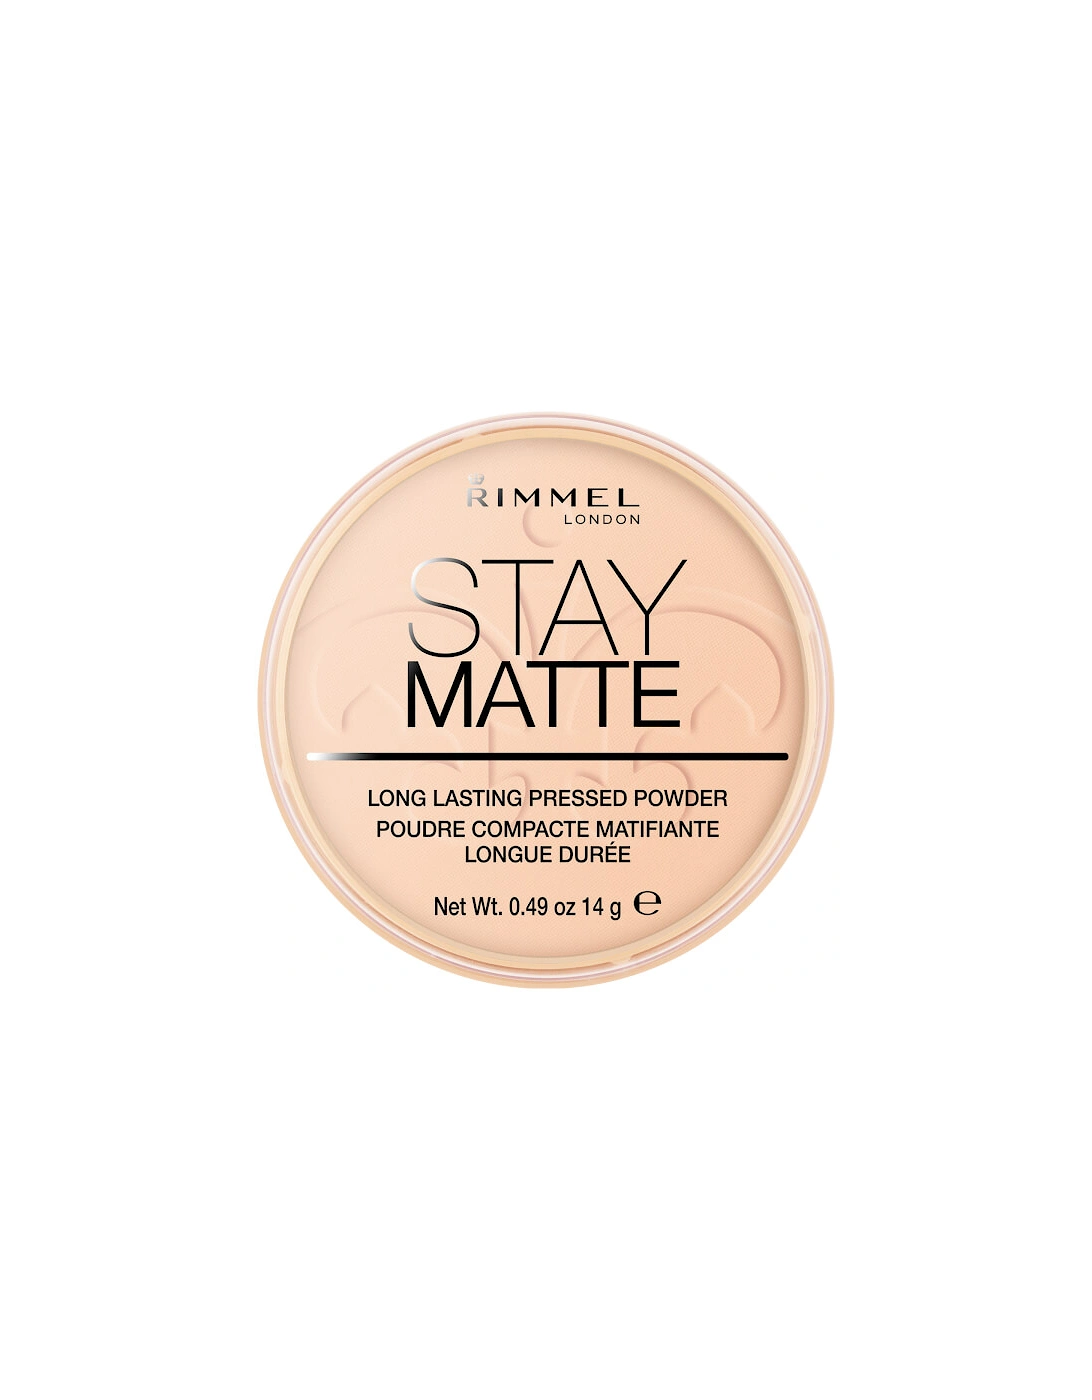 Stay Matte Pressed Powder - Warm Beige, 2 of 1